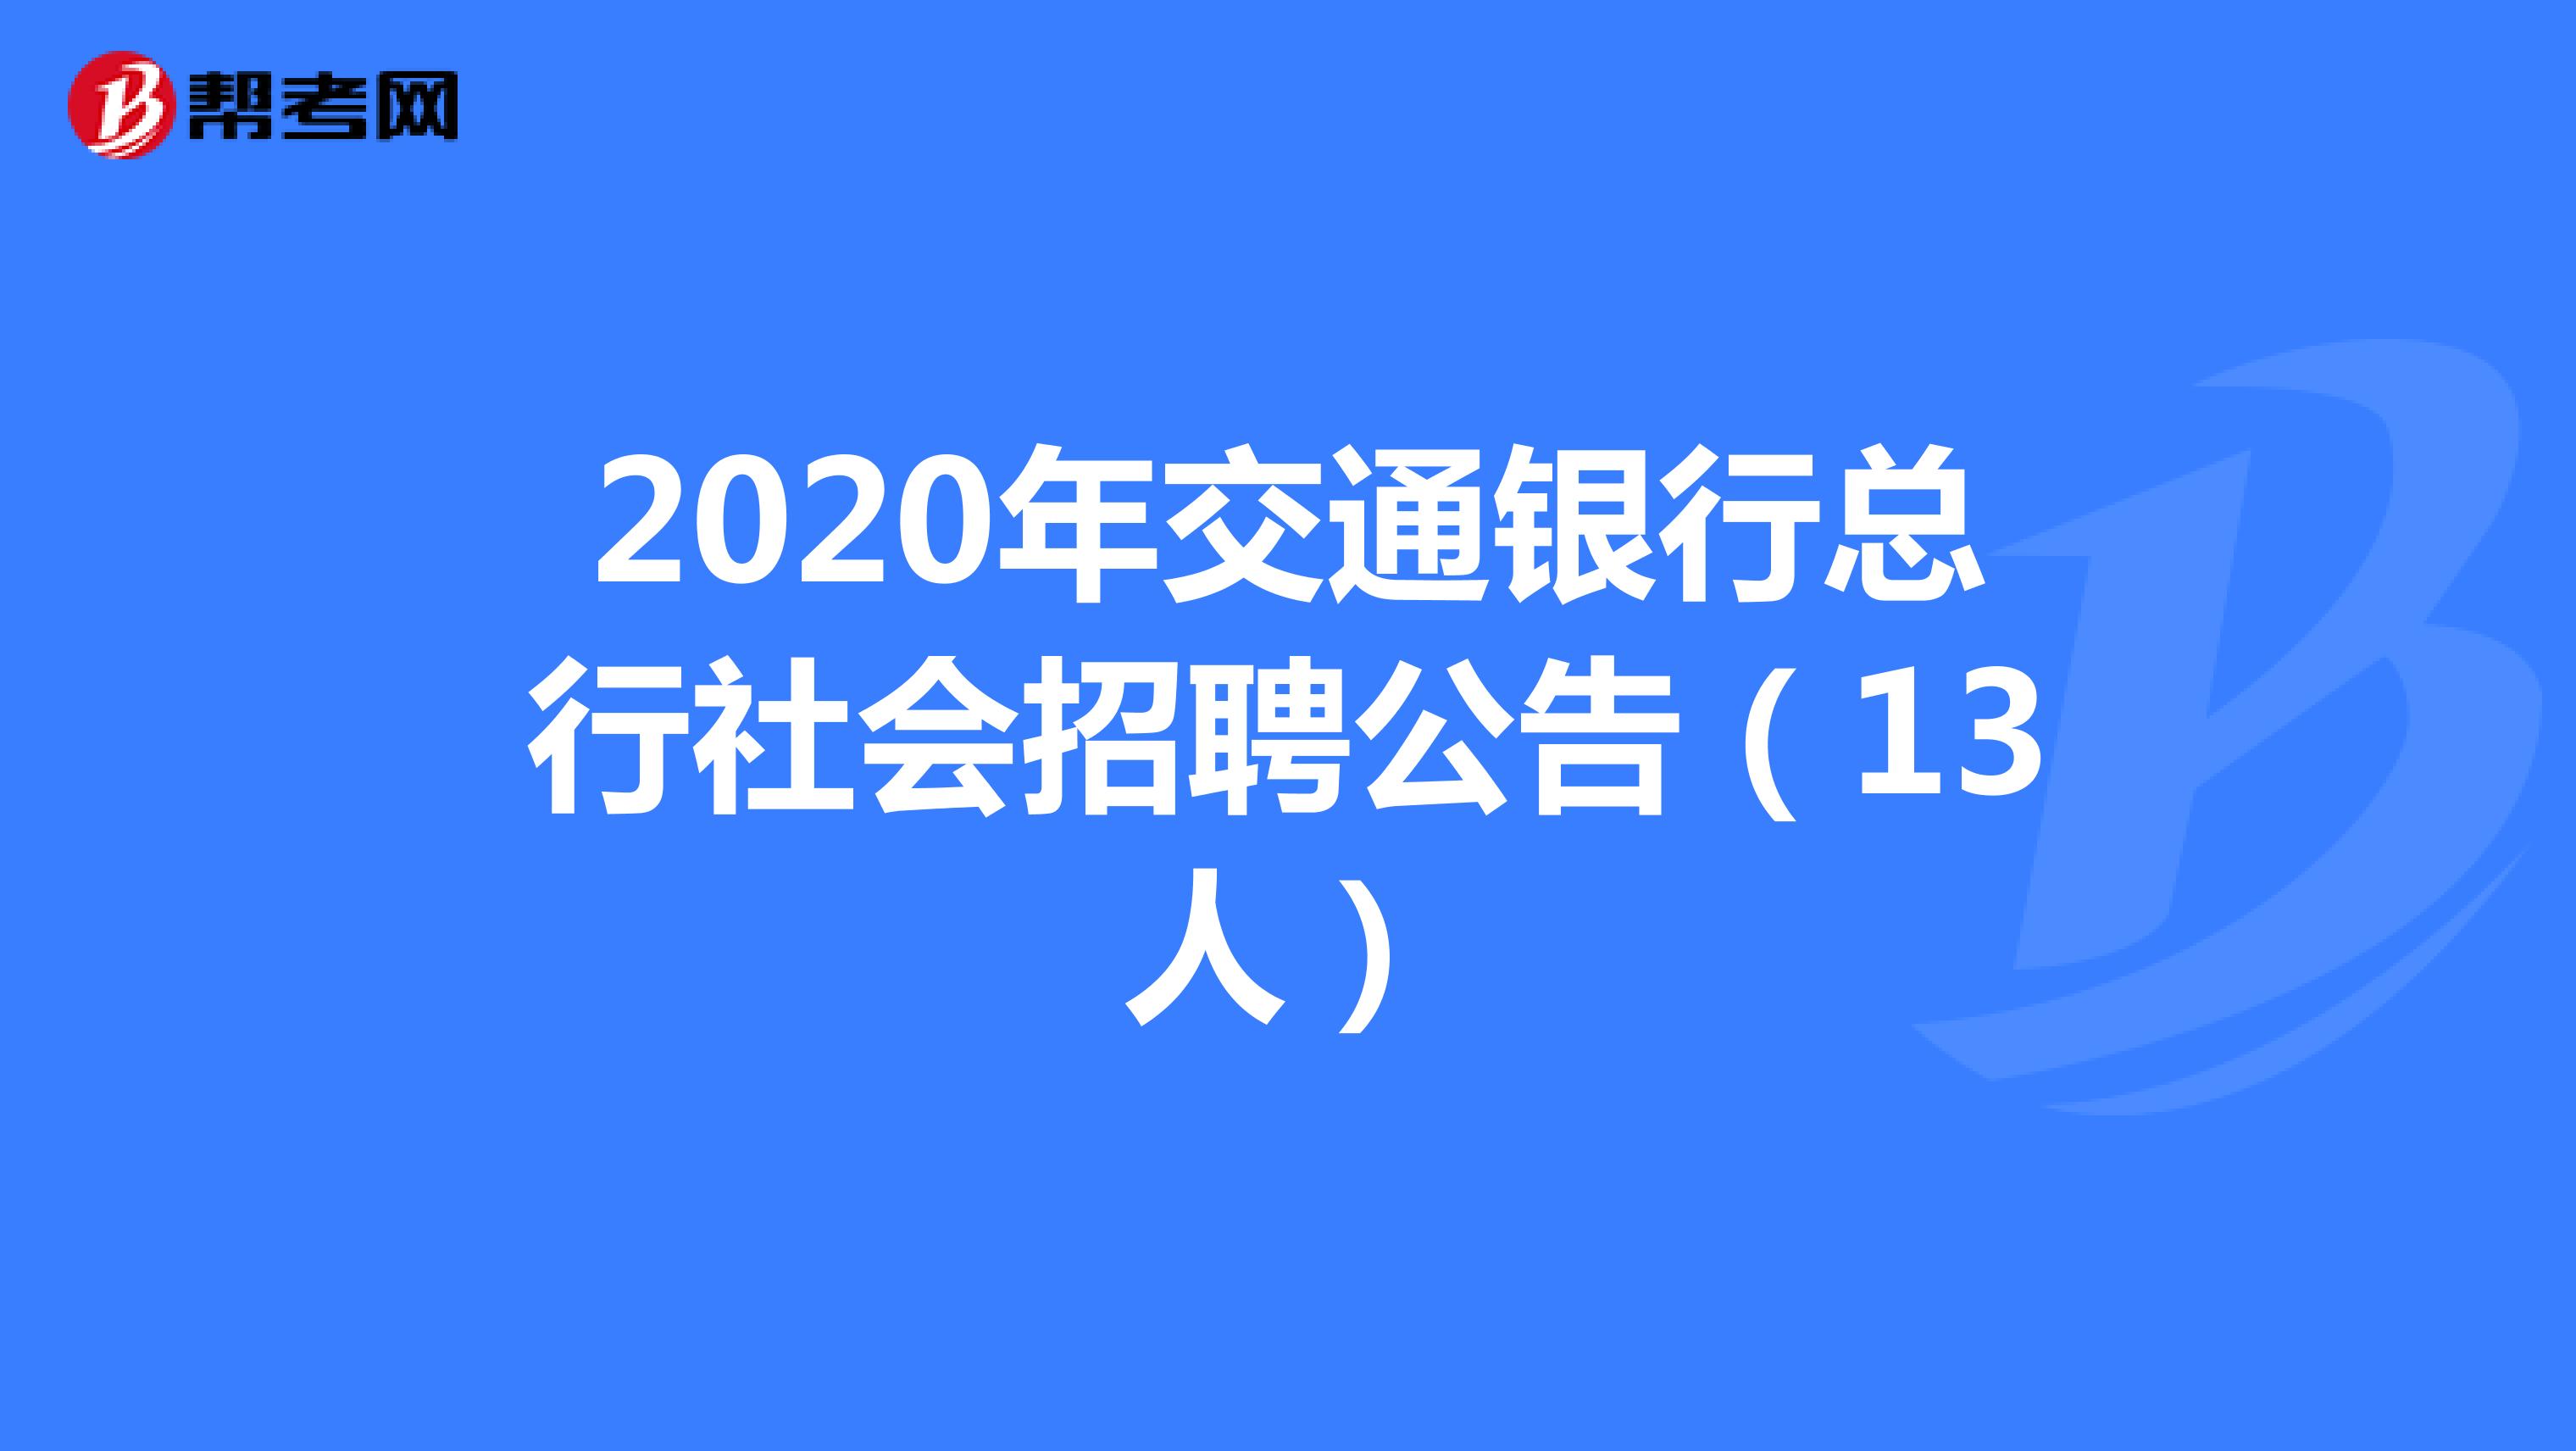 2020年交通银行总行社会招聘公告（13人）